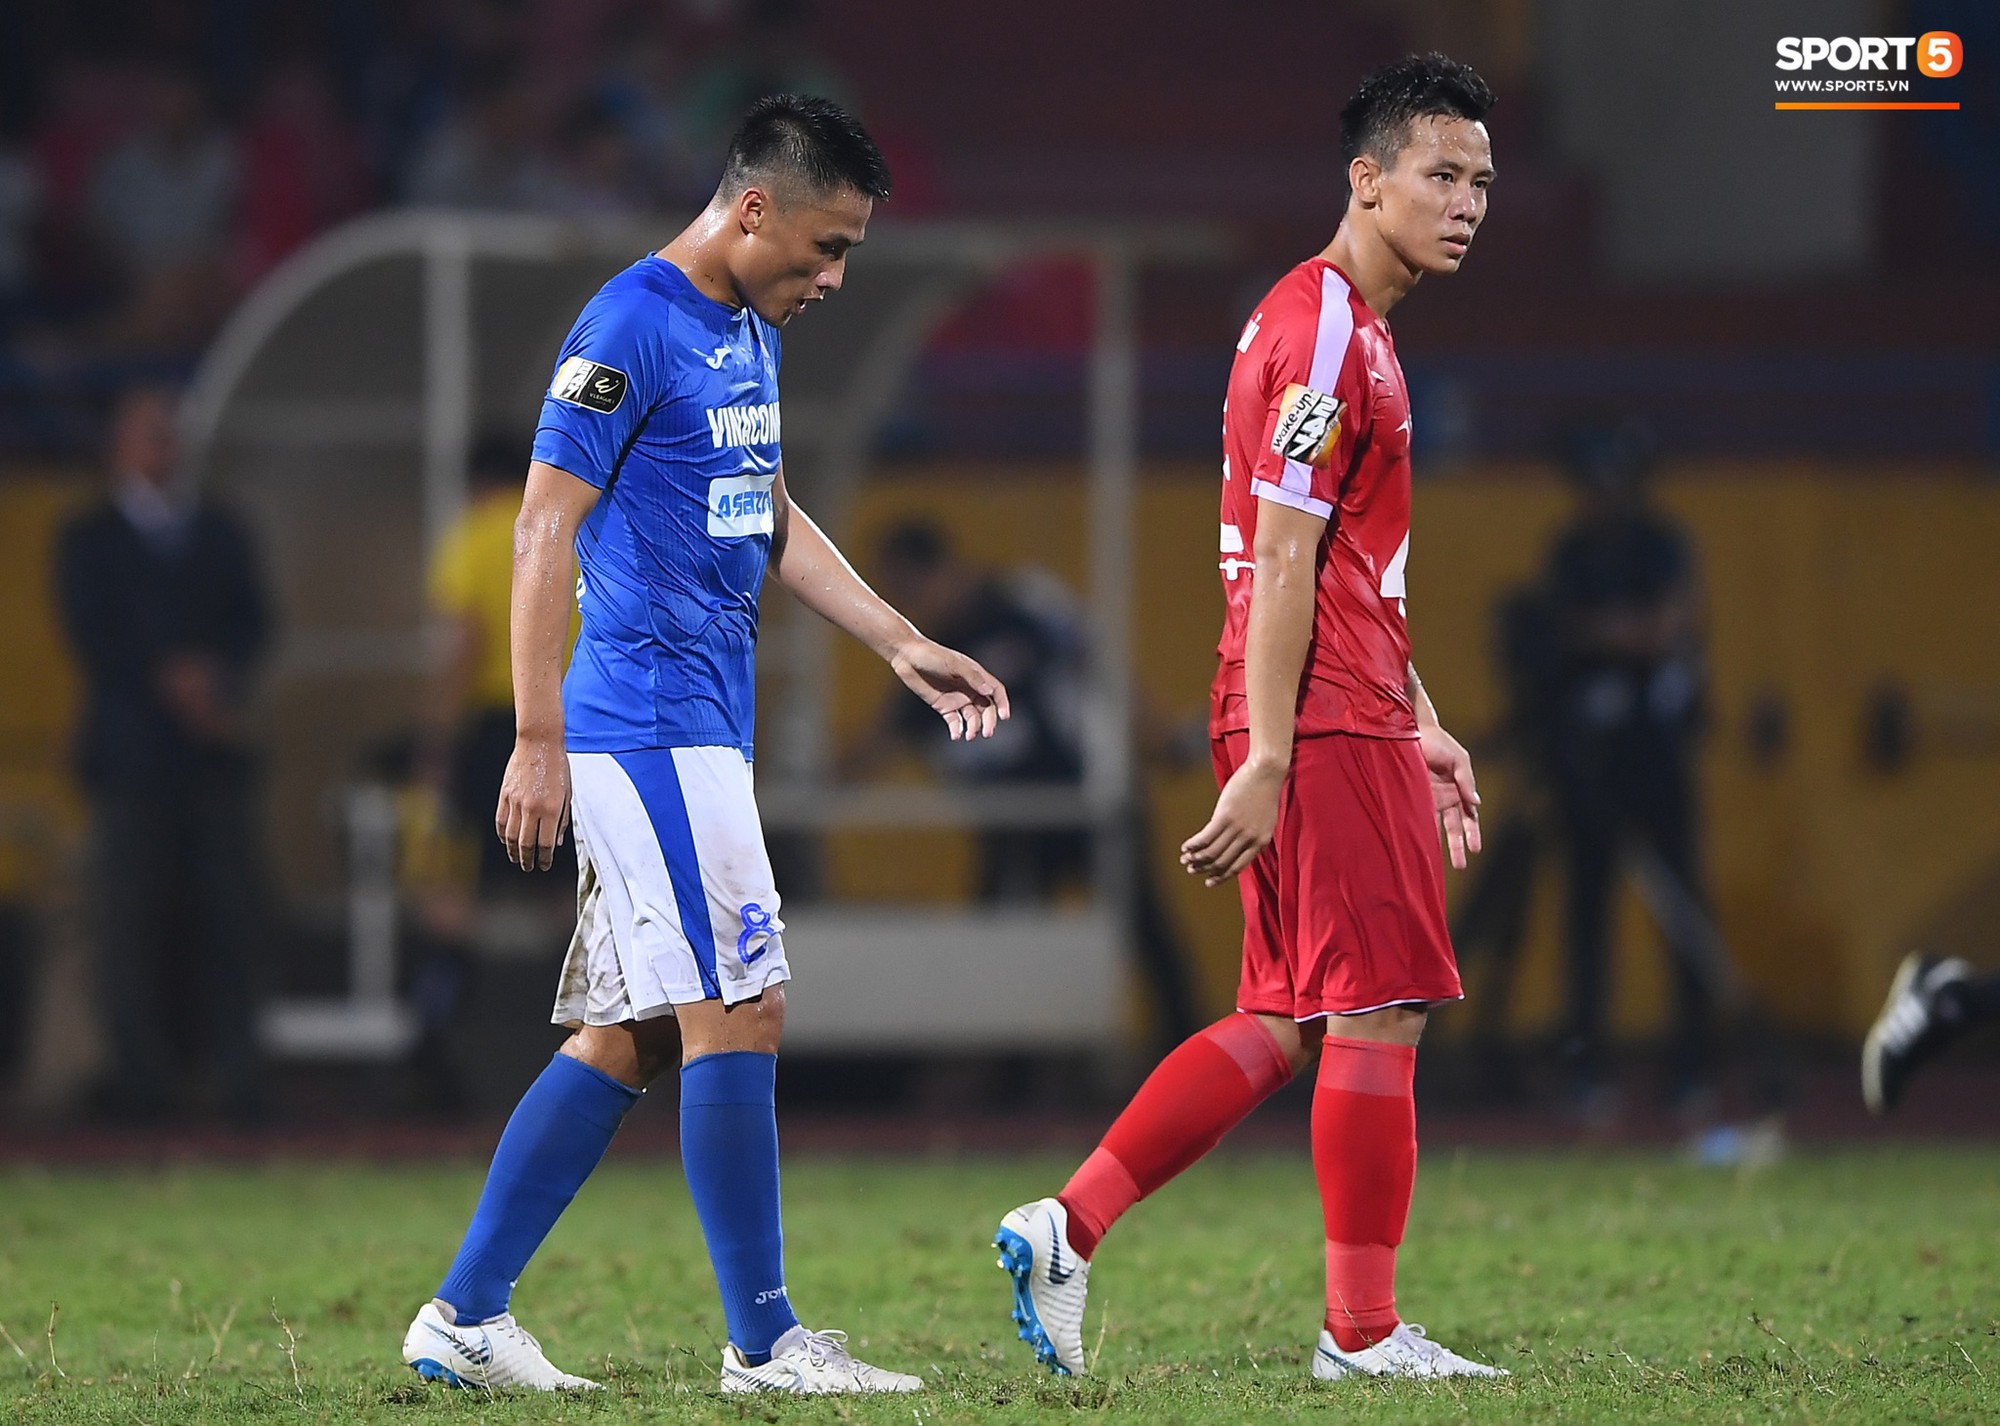 Thầy Park đầy suy tư khi chứng kiến Hải Quế, Tiến Dũng để thủng lưới tới 3 bàn trong trận đấu với Quảng Ninh - Ảnh 2.